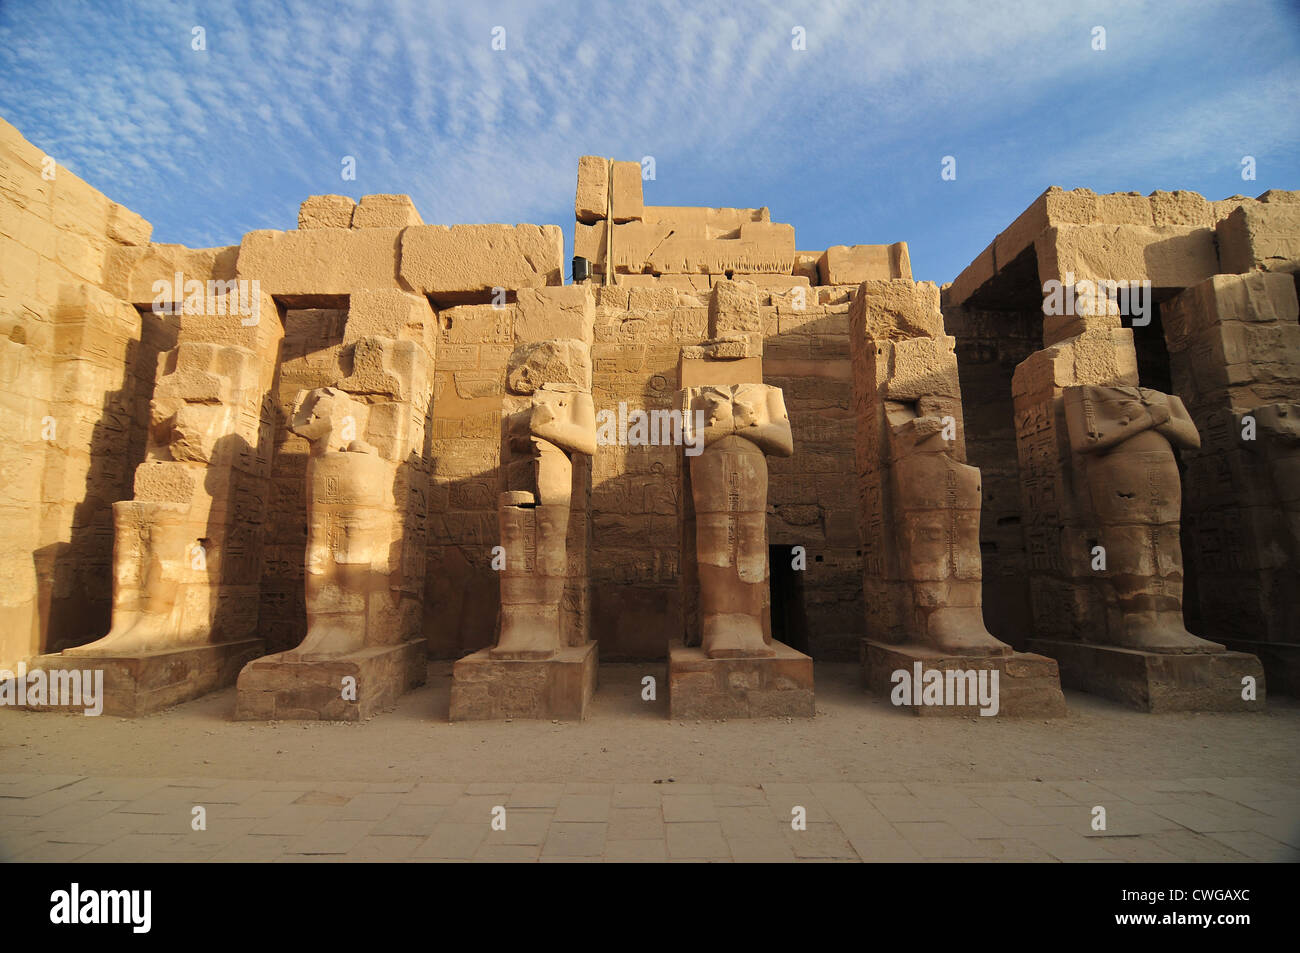 Estatuas de Egipto Karnak, formando una vasta variedad de dientes cariados templos, capillas, torres y otros edificios. Foto de stock